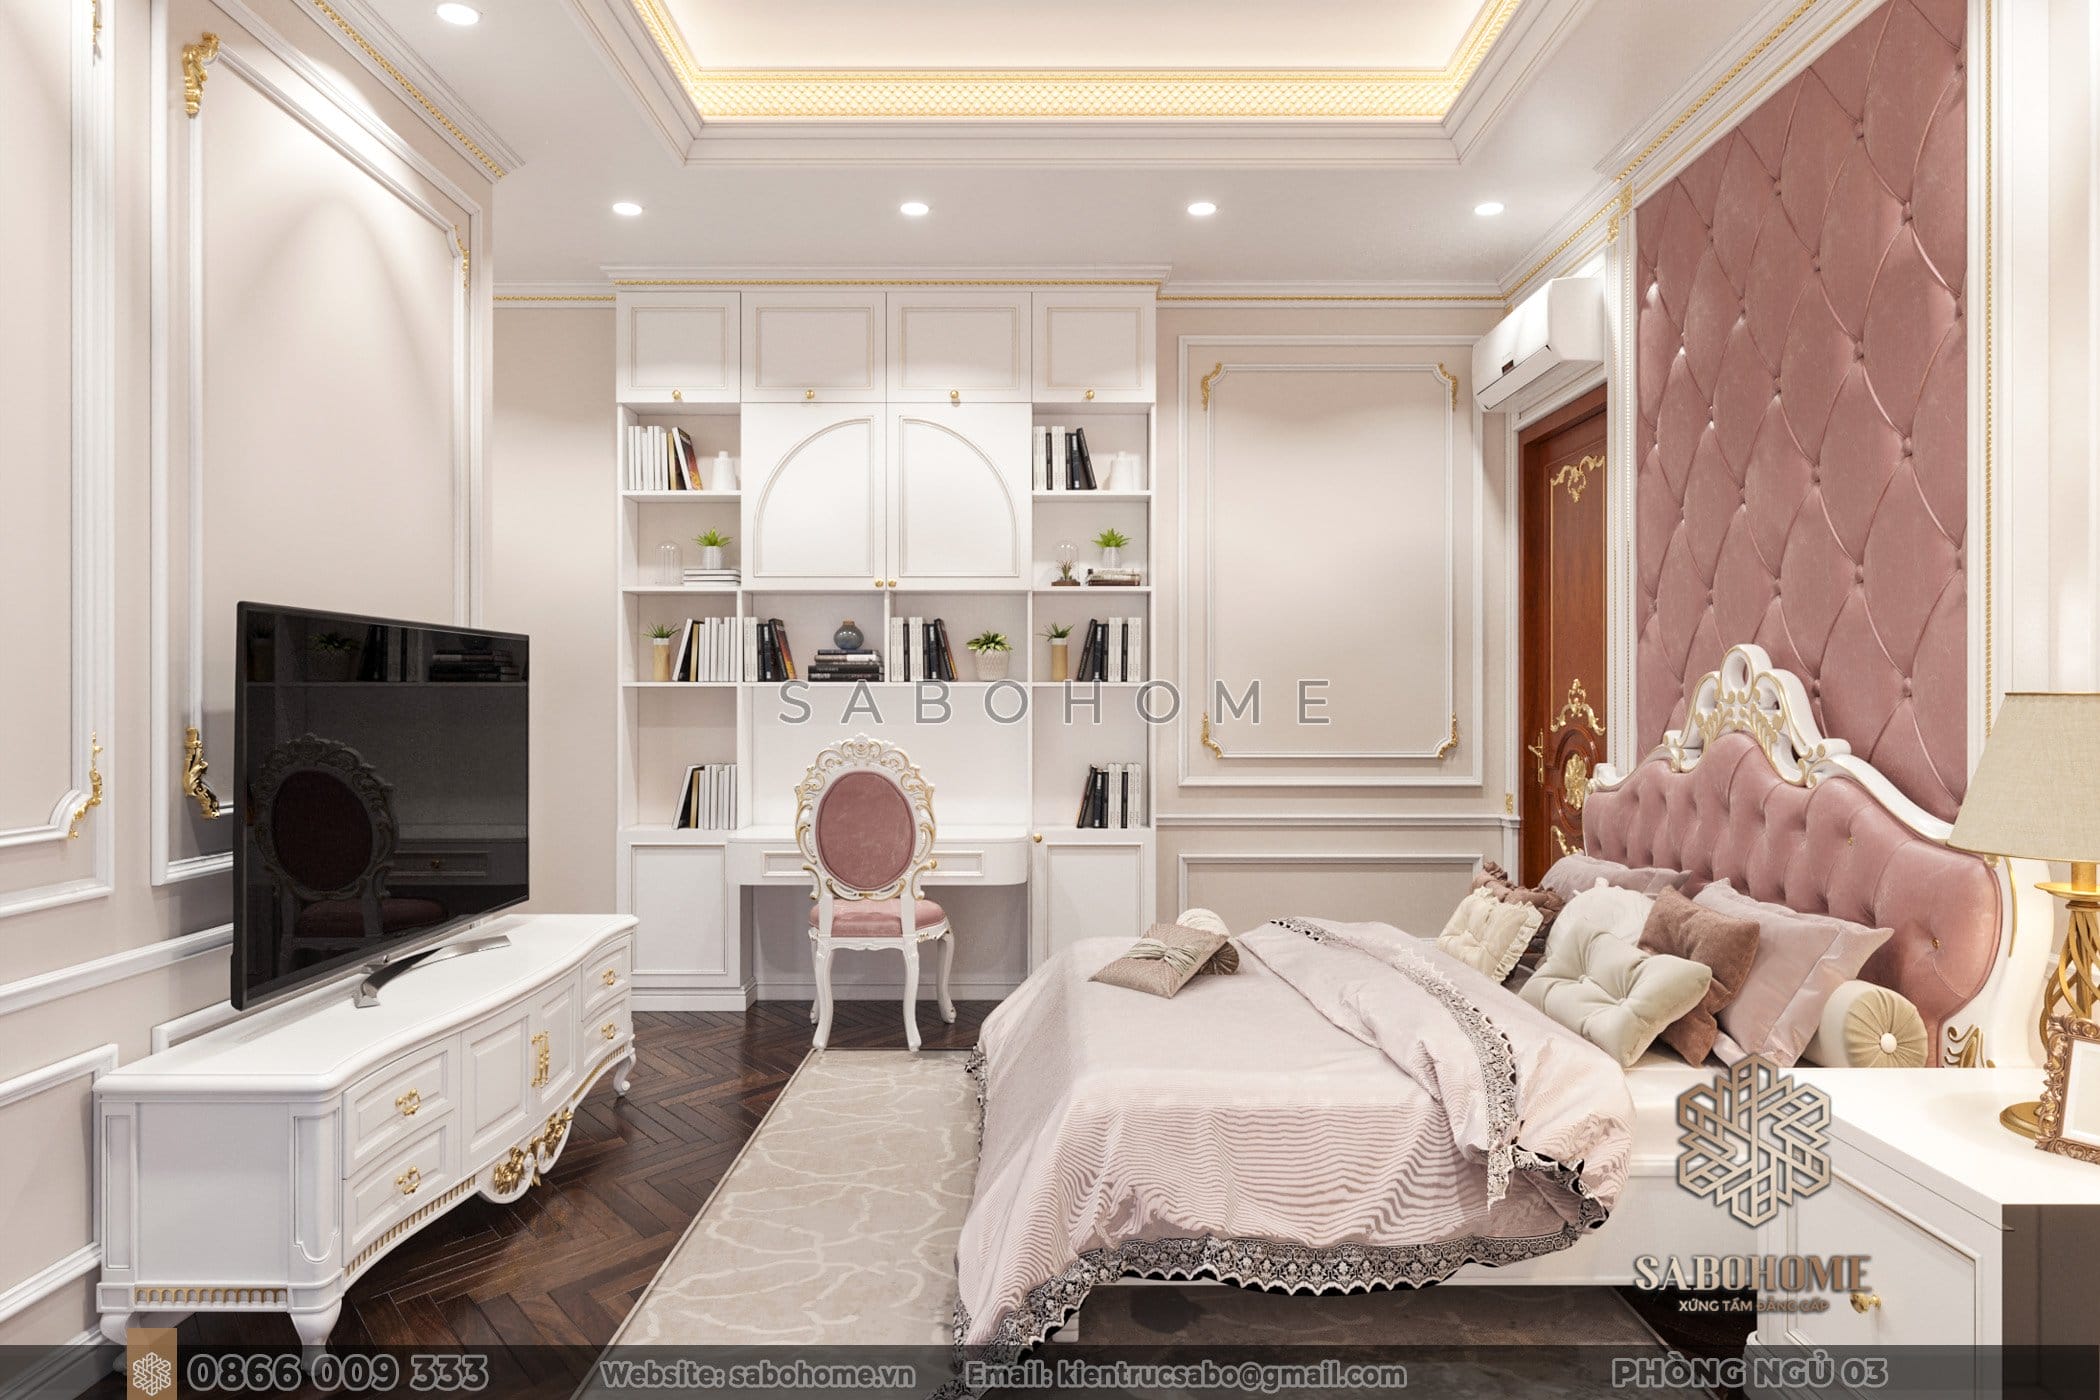 Phòng ngủ màu hồng: Khu vực nhuần nhuyễn và ngọt ngào để thể hiện tình yêu bé gái